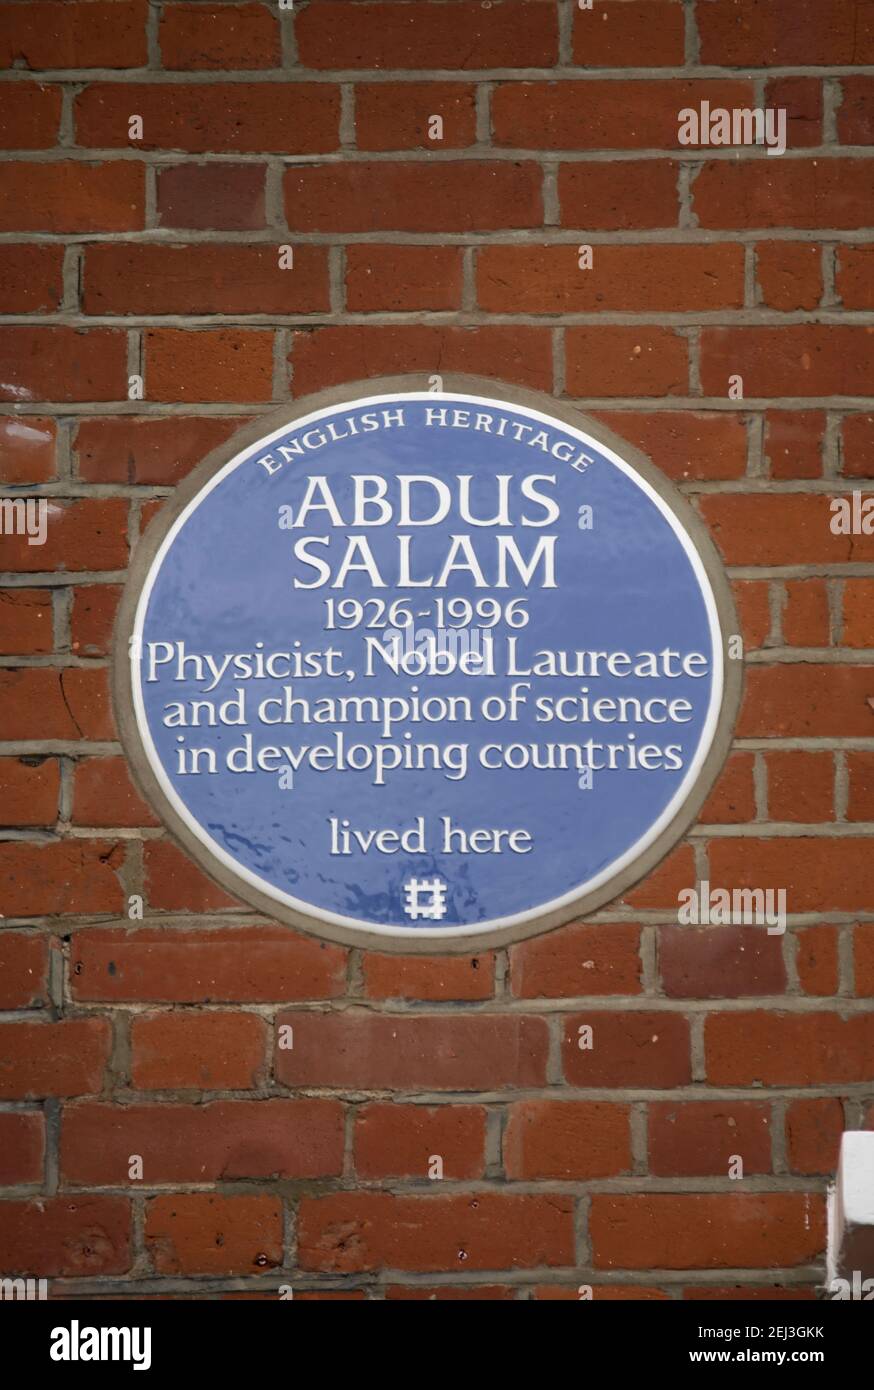 plaque bleue du patrimoine anglais marquant une maison de physicien et prix nobel abdus salam, à putney, londres, angleterre Banque D'Images